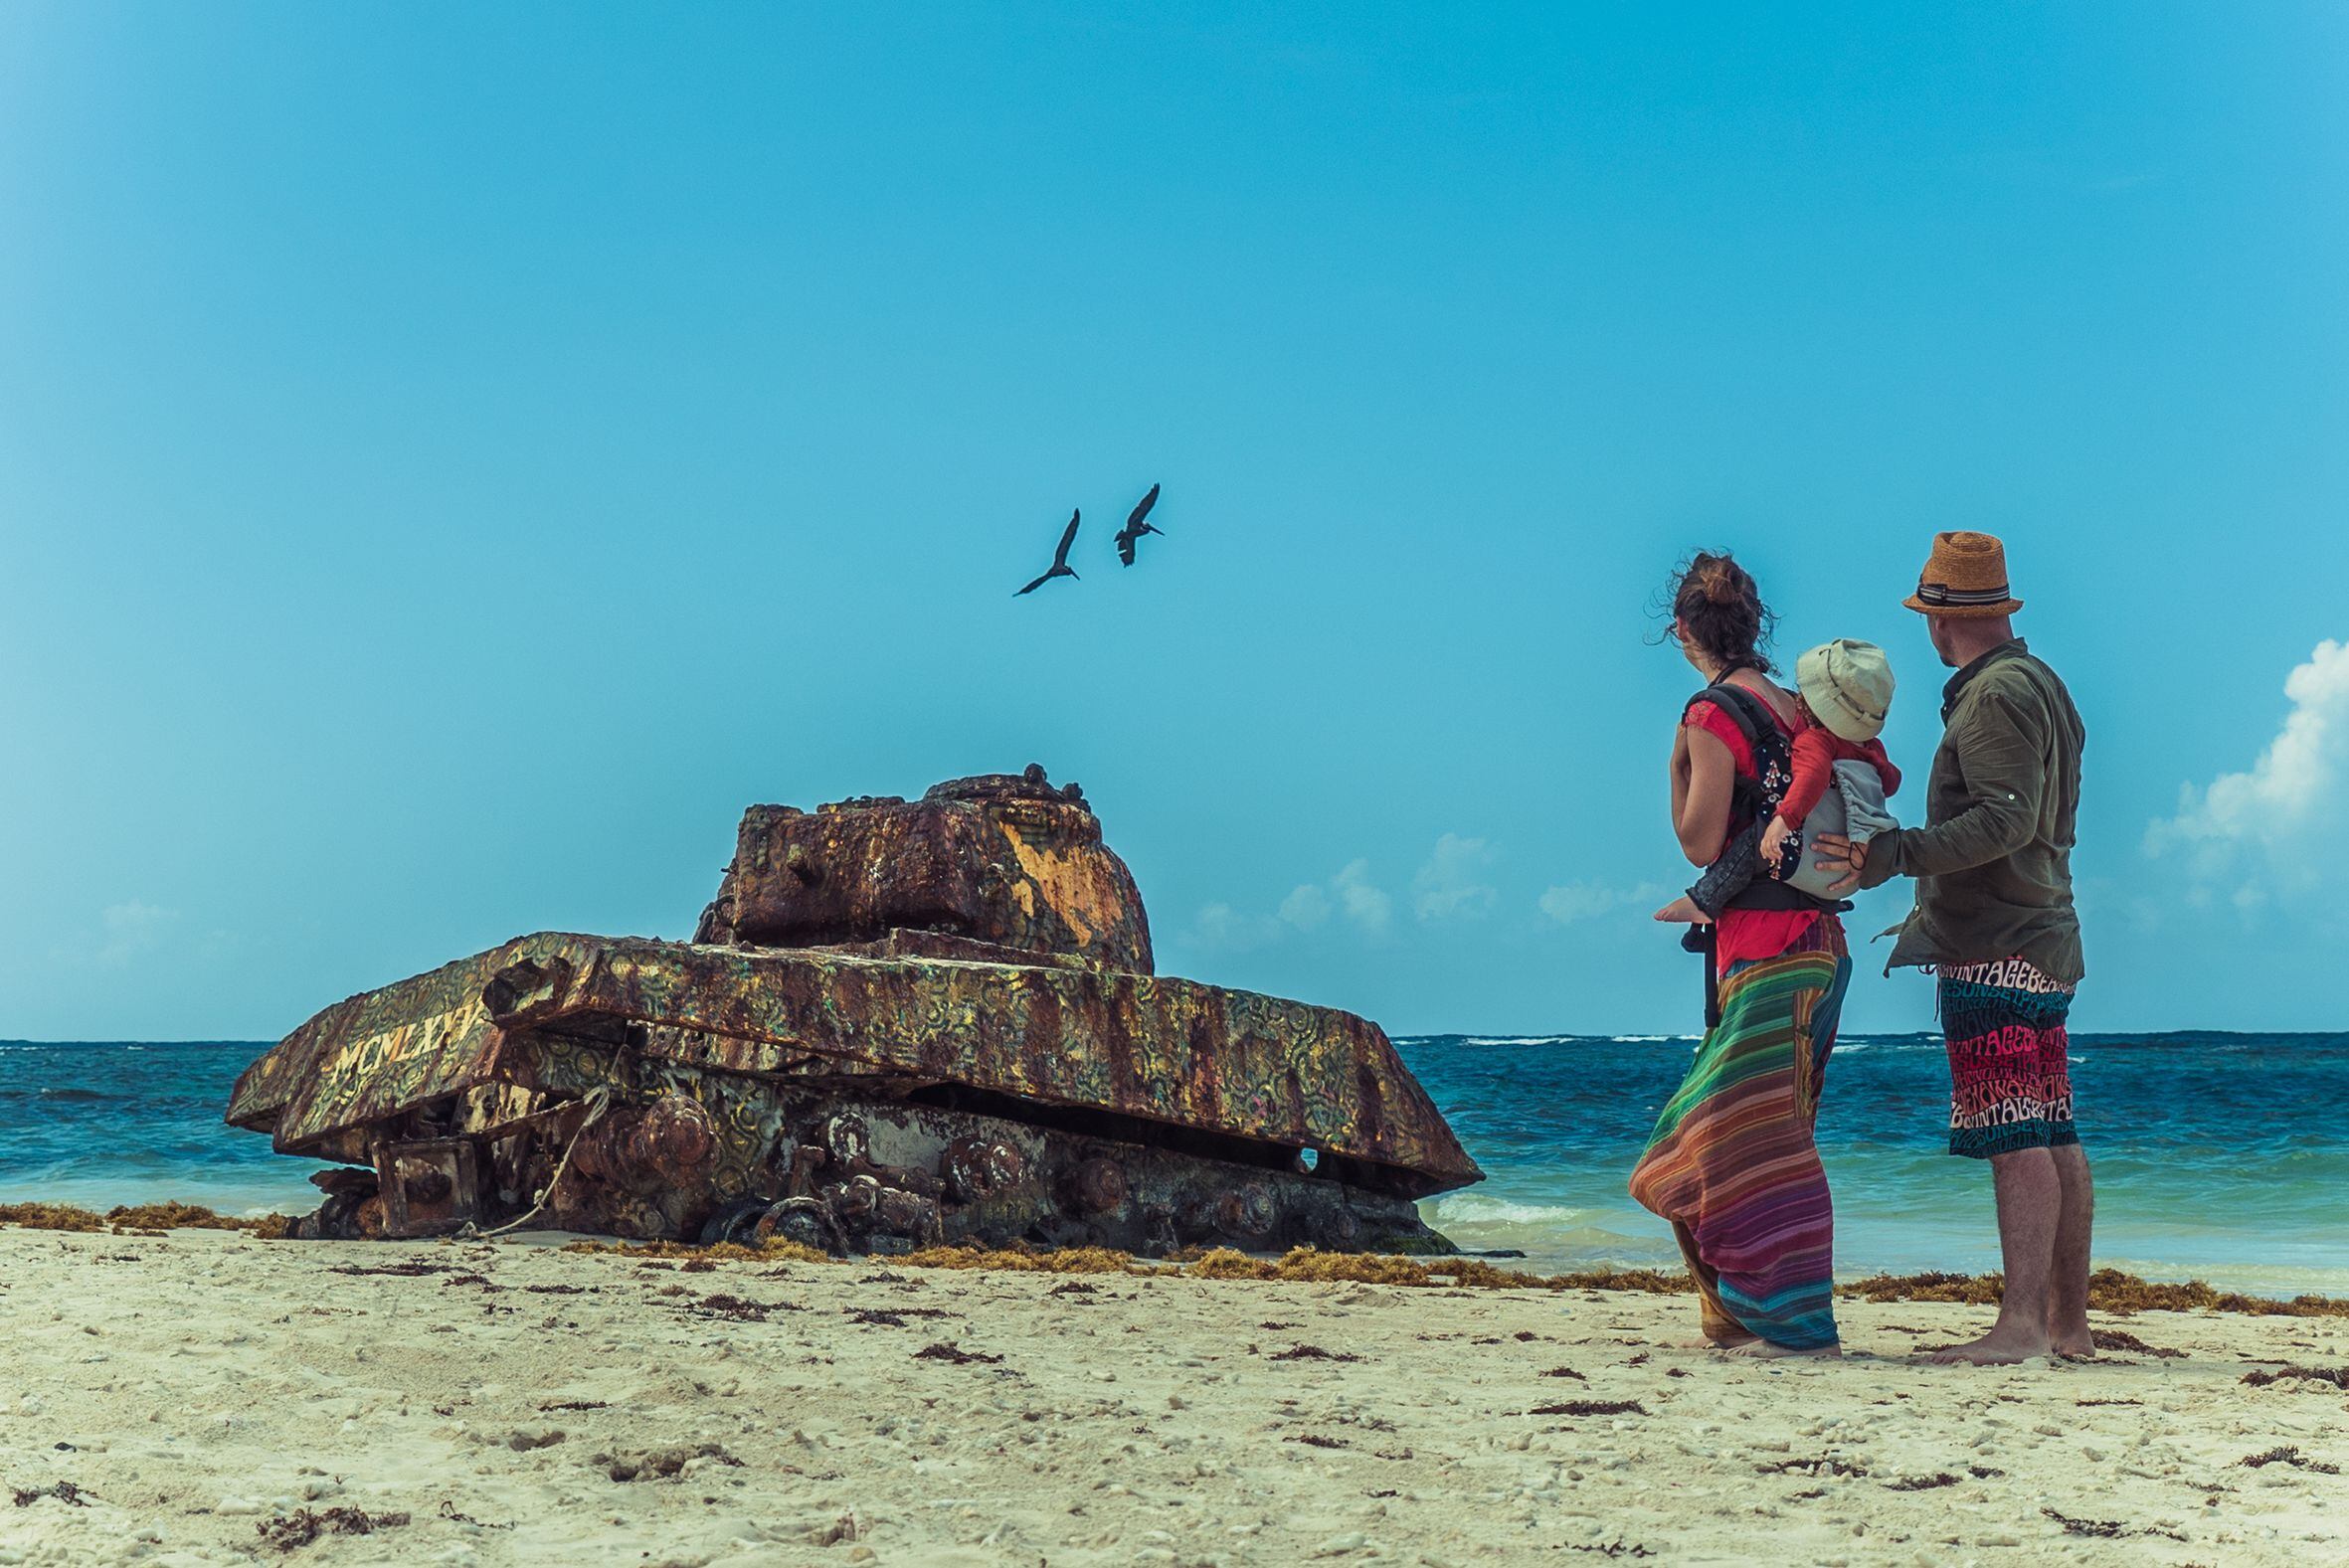 Rubén Señor y Lucía Sánchez, nómadas digitales, exploran Isla Culebra, en Puerto Rico, junto a su hijo Koke.